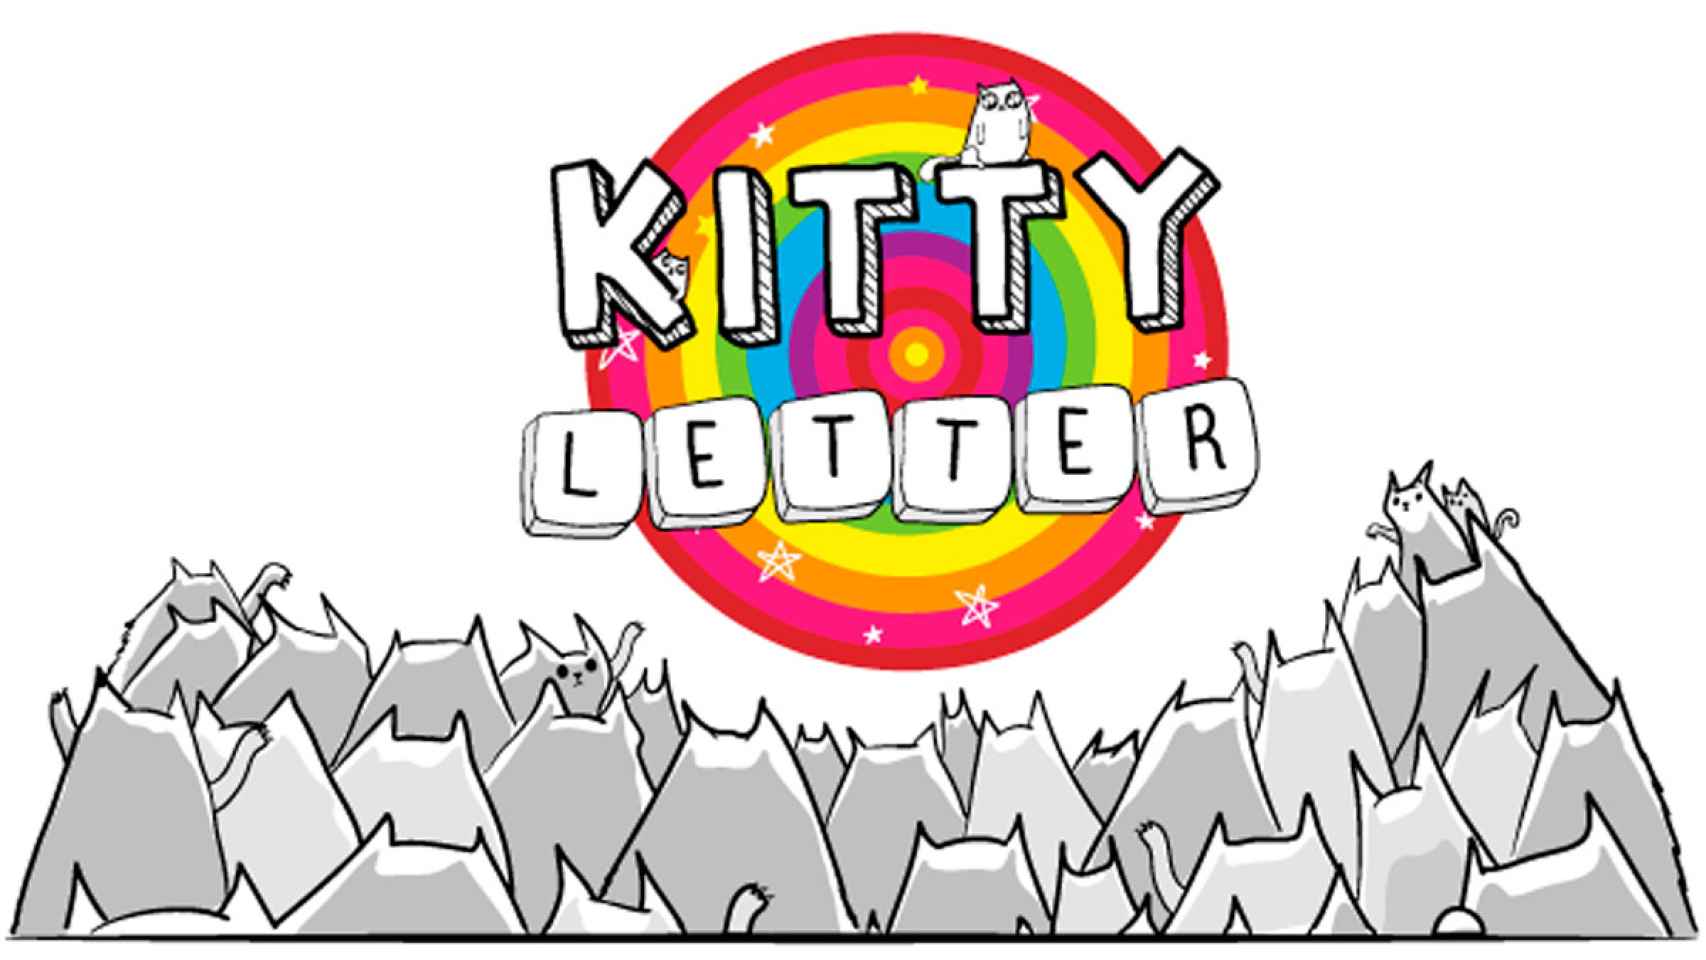 Los creadores de Exploding Kittens tienen nuevo juego en Android: Kitty Letter